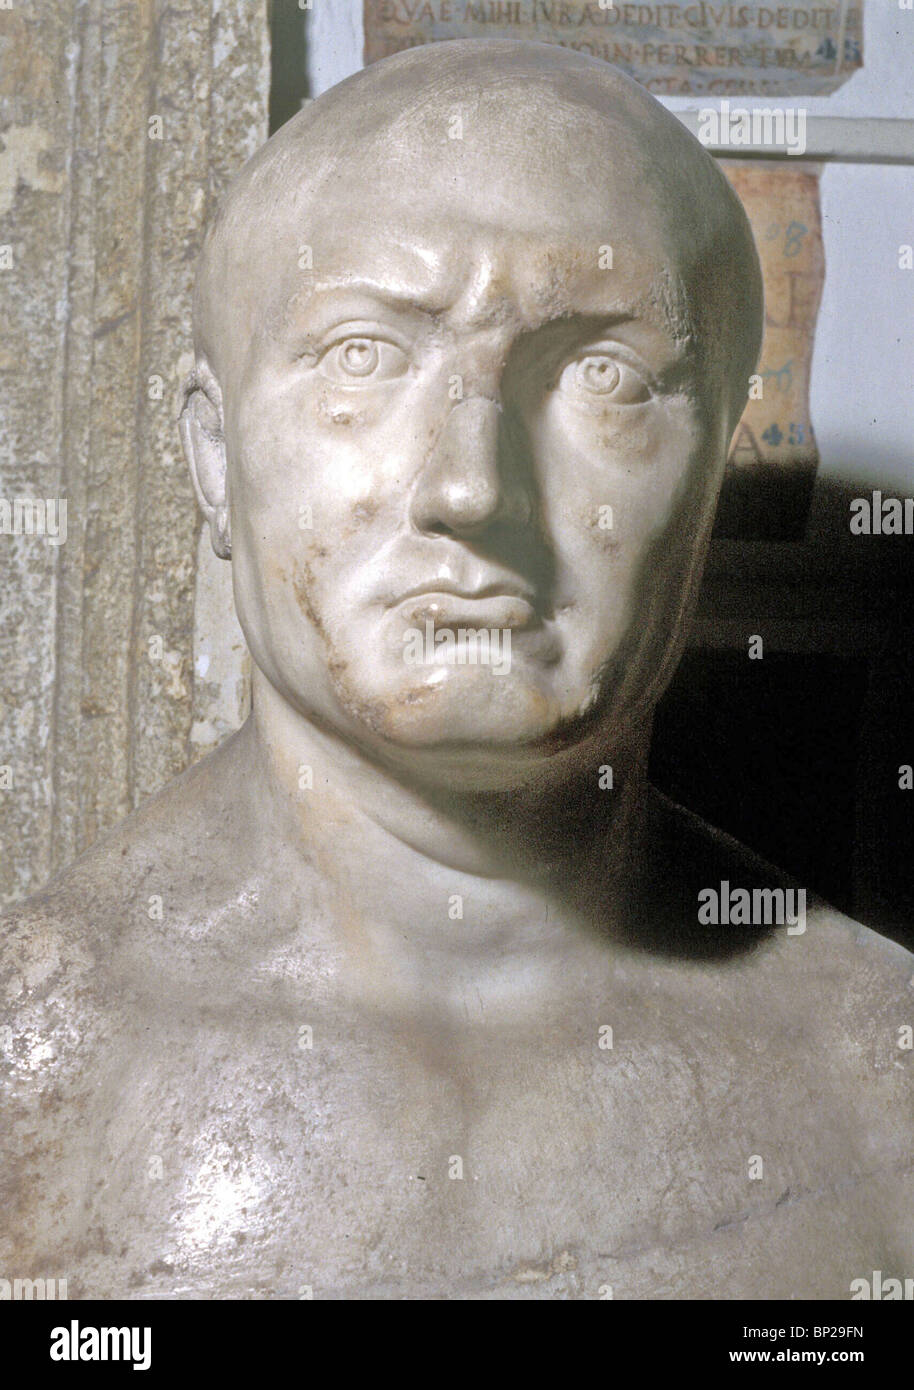 Büste von SCIPIO AFRICANUS römischen allgemeinen bekannt für seinen Sieg über die Karthager Anführer Hannibal in die große Schlacht von Zama Stockfoto